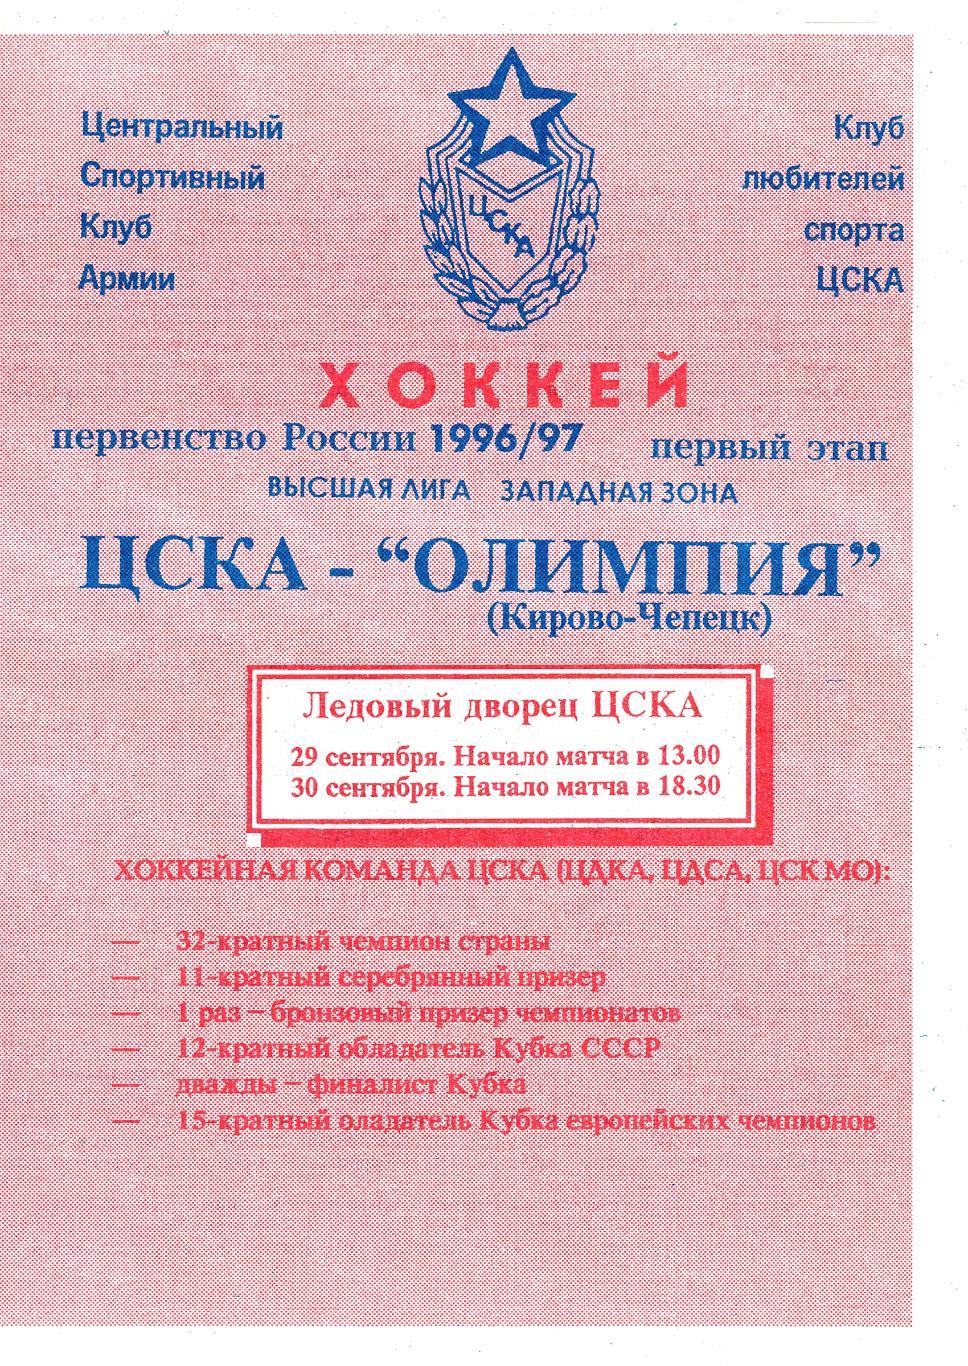 1996/09/29-30 ЦСКА Москва - Олимпия Кирово-Чепецк. Файл PDF